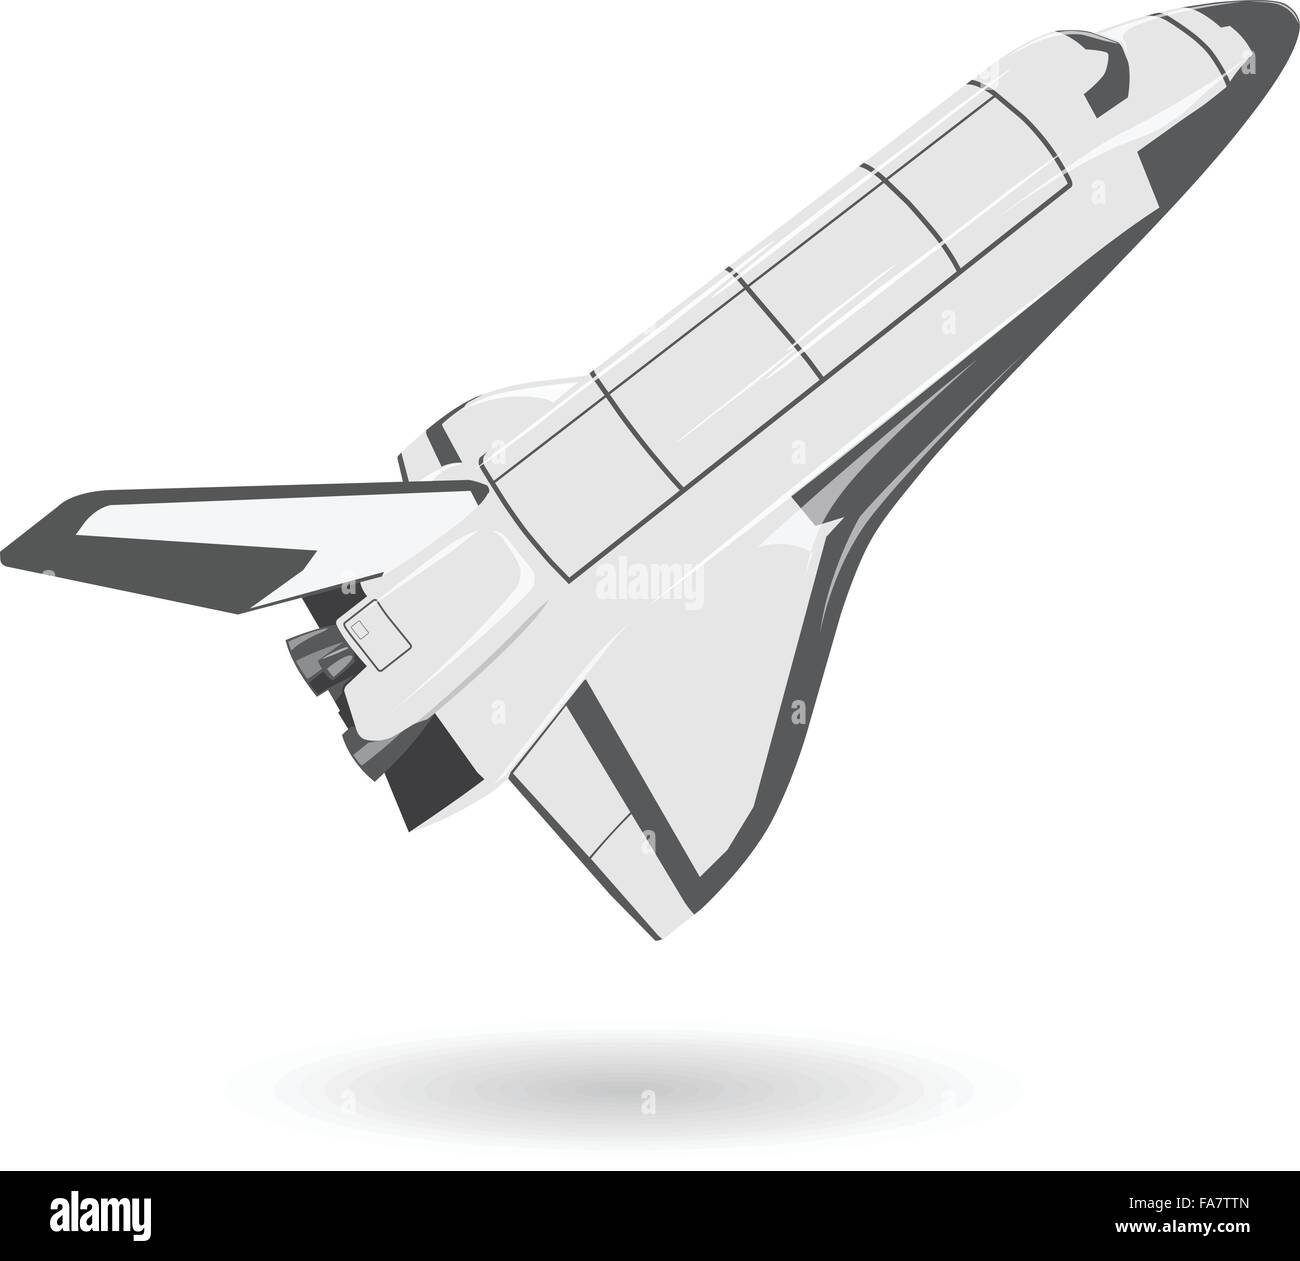 Blanco y negro sobre blanco del transbordador espacial de Niza - Niza nave de hélice de tanque de combustible - Acoplar ilustración aislada vector principal Ilustración del Vector